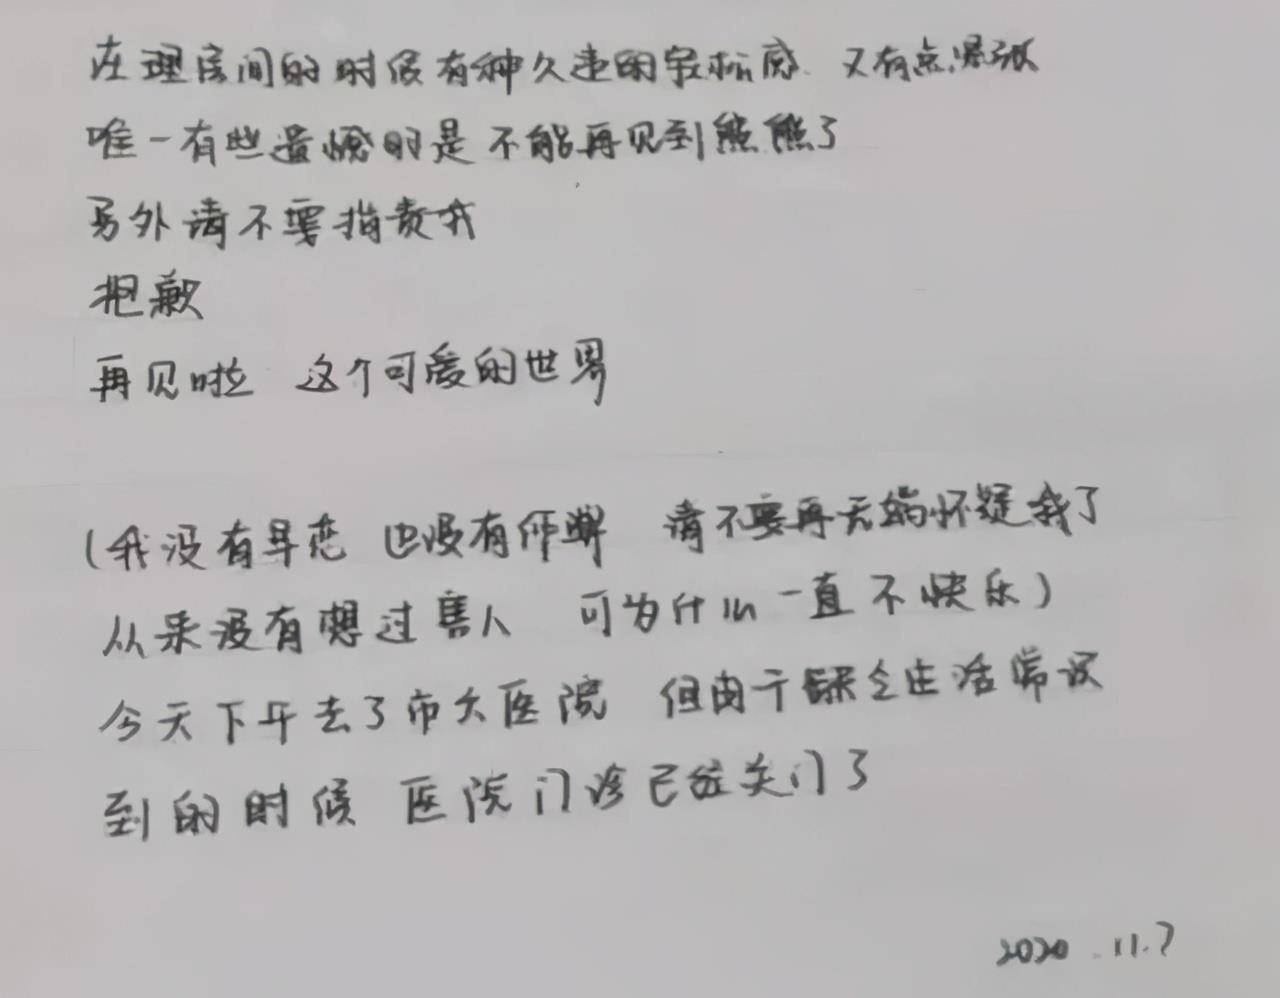 上海18岁女生跳河,生前遗书曝光:在人间,谁活着不是遍体鳞伤